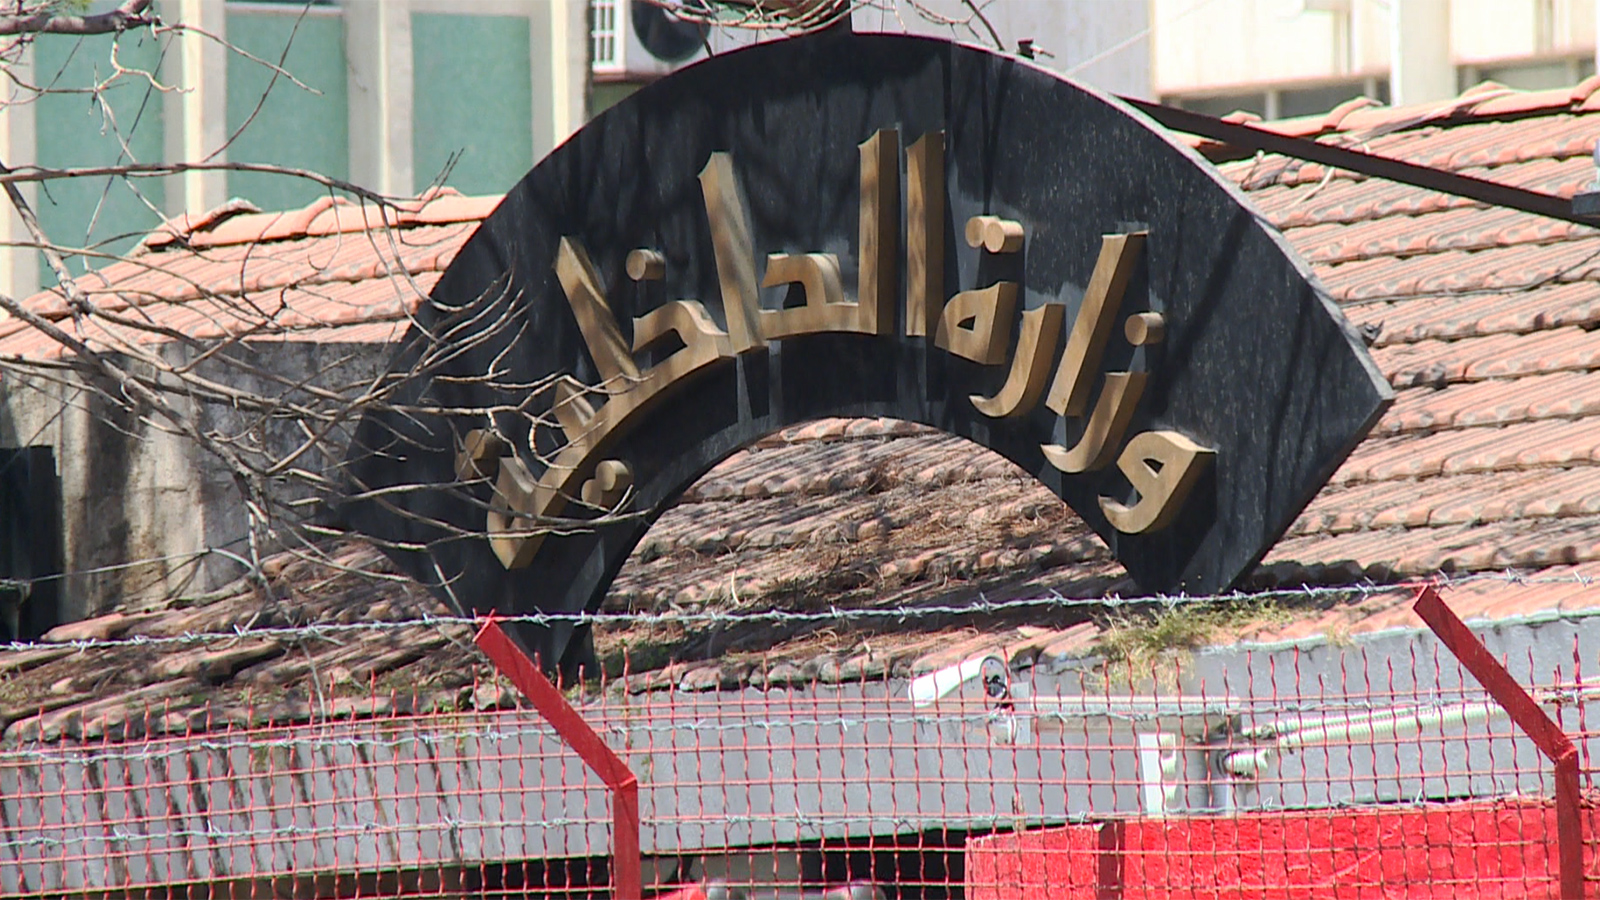 ‪وزارة الداخلية تؤكد ألا شبهة أمنية على المستفيدين من المرسوم‬ (الجزيرة)